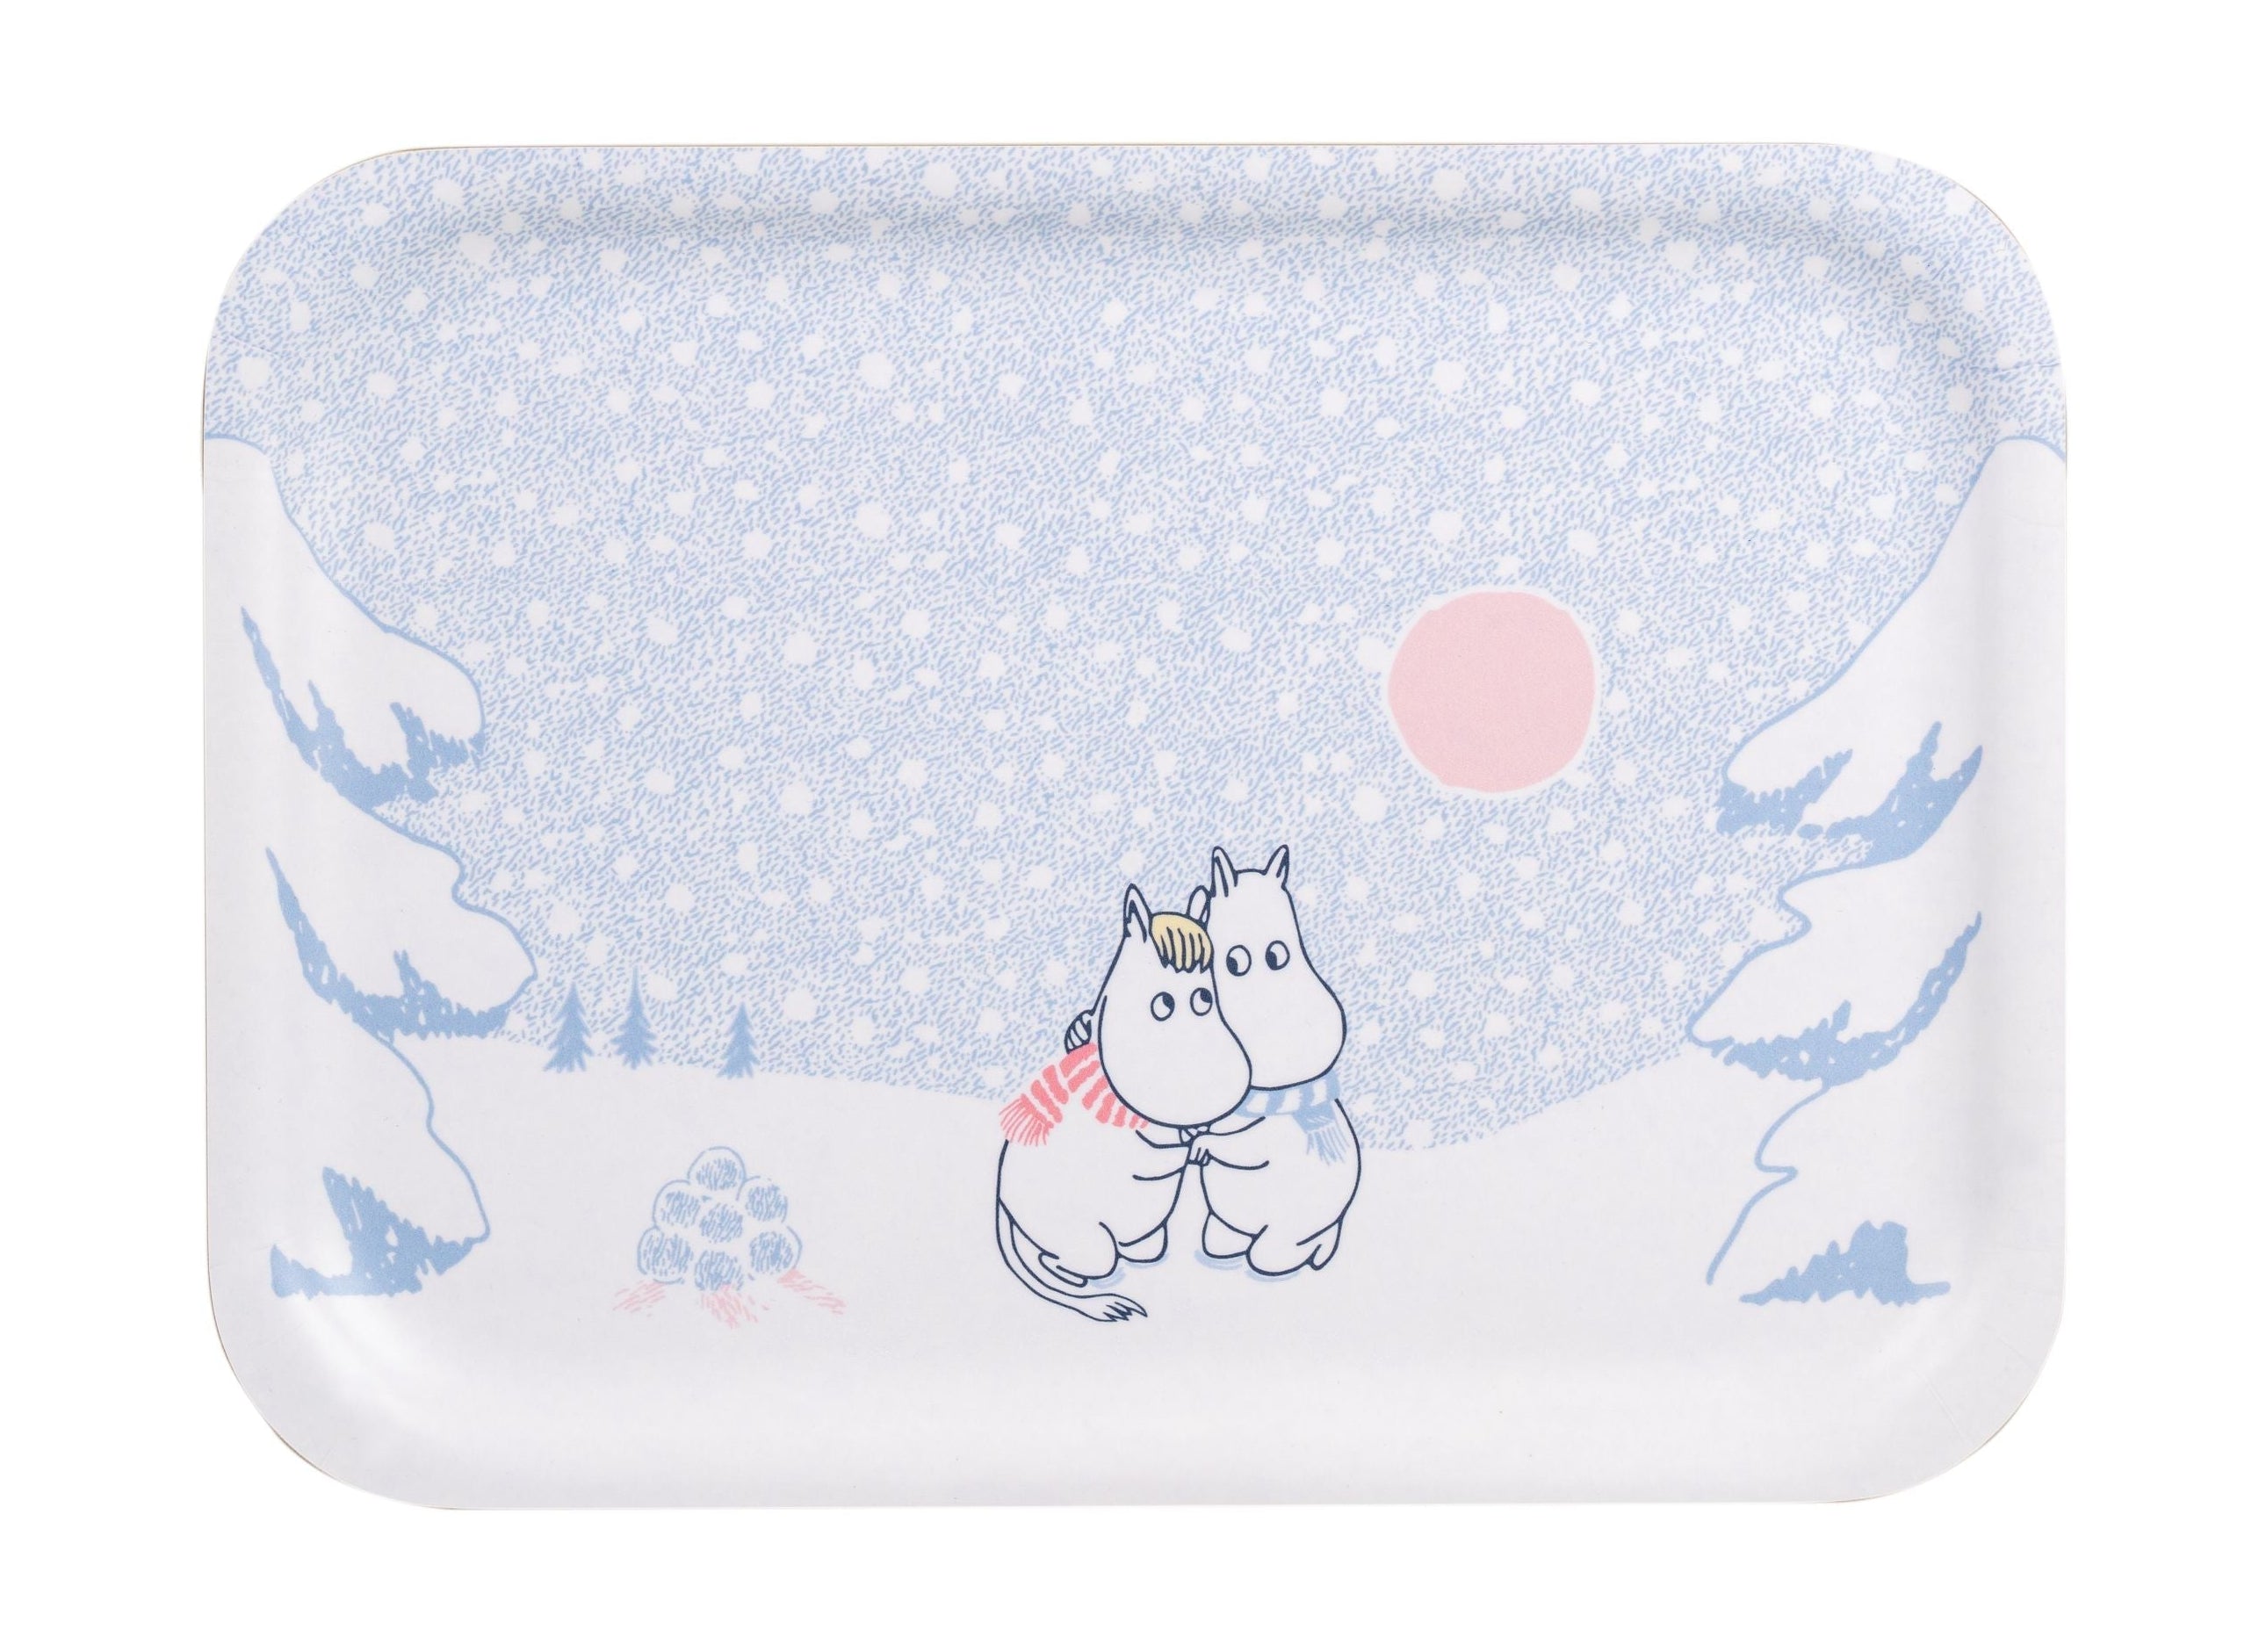 Muurla Moomin Tably lass es schneien